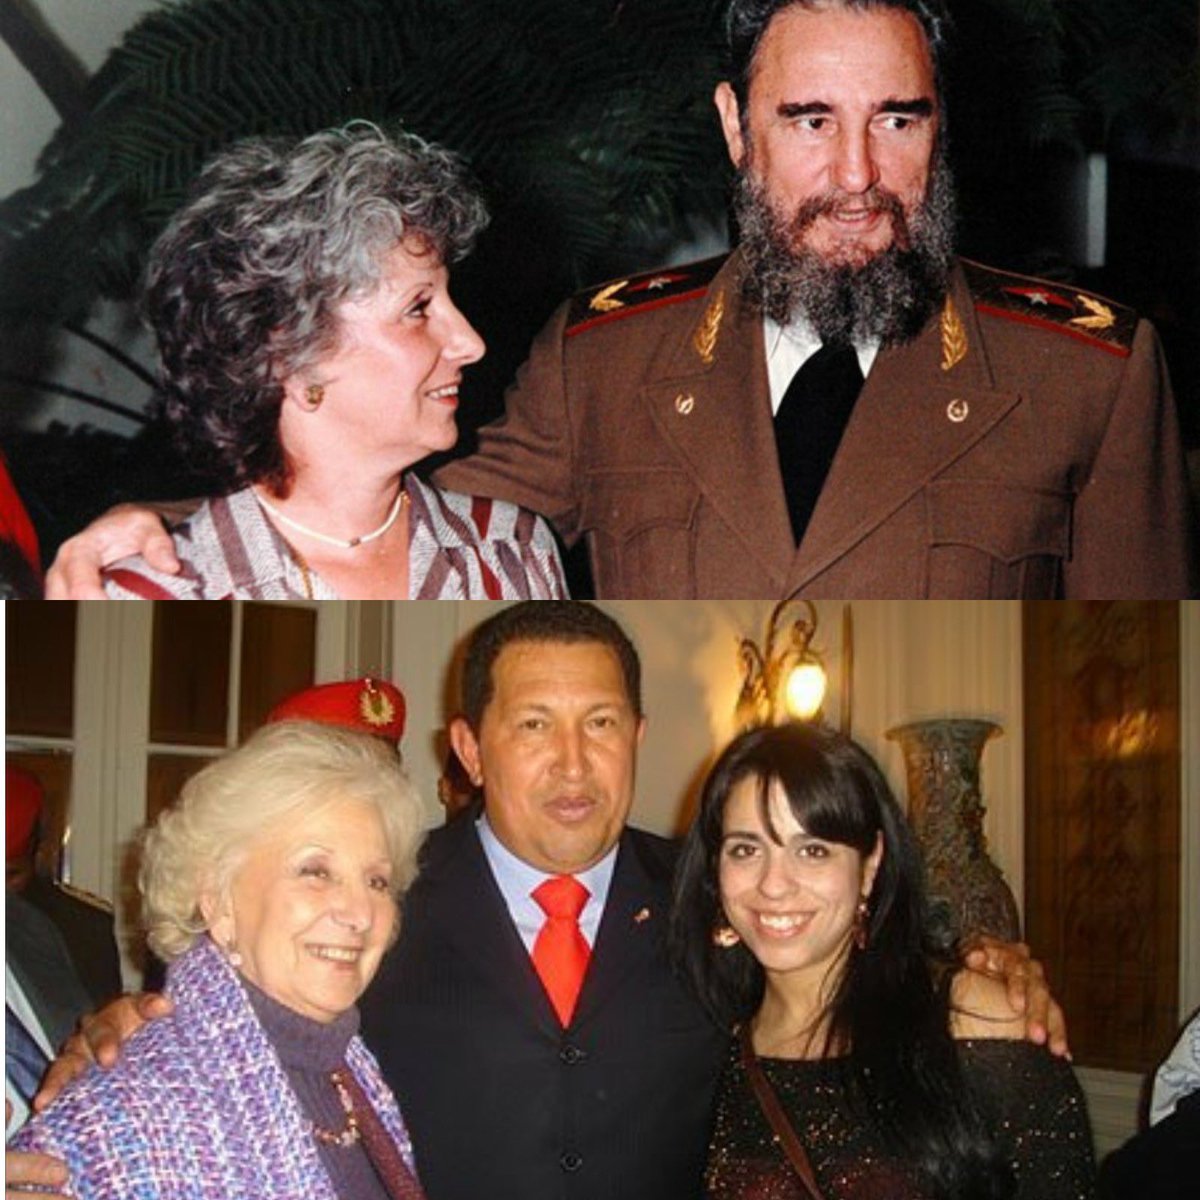 @gonzaIcarranza Bueno tienen algo en común adoran dictadores 😏